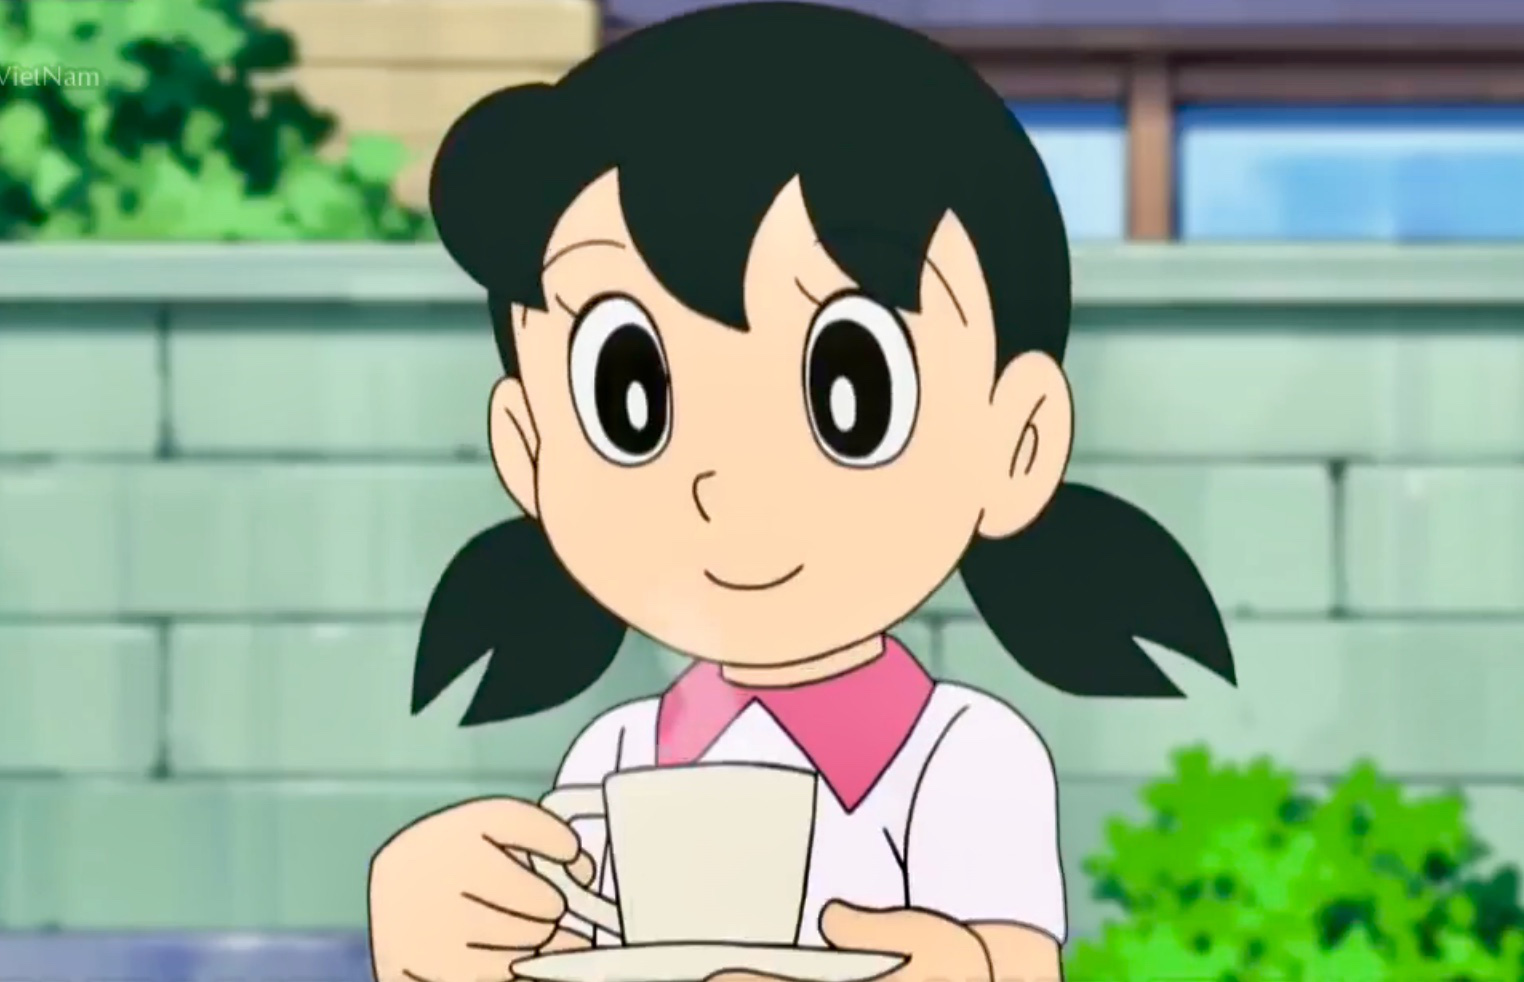 Shizuka là một nhân vật xinh đẹp trong Doraemon, nhưng bạn biết rằng cô ấy cũng có những anti-fan không kém. Gia nhập cộng đồng fan Doraemon và xem các bức hình đẹp về Shizuka trong các tình huống thú vị nhất. Hãy cho rằng mình là một trong những người theo đuổi cô ấy và tận hưởng những giây phút đầy thú vị.